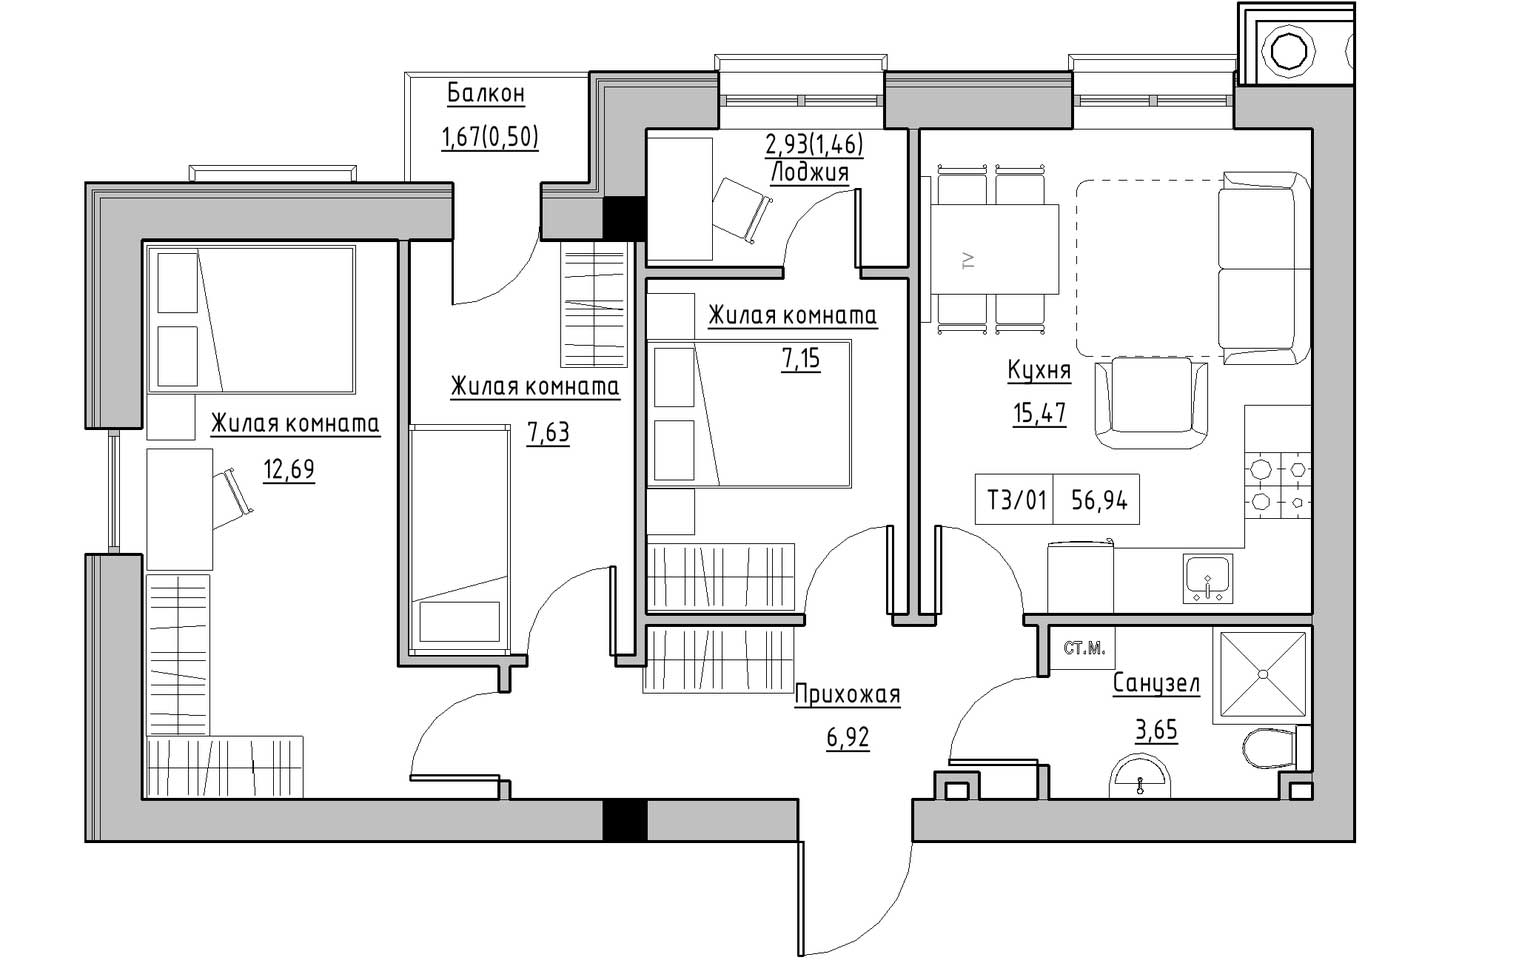 Планування 3-к квартира площею 56.94м2, KS-009-04/0006.